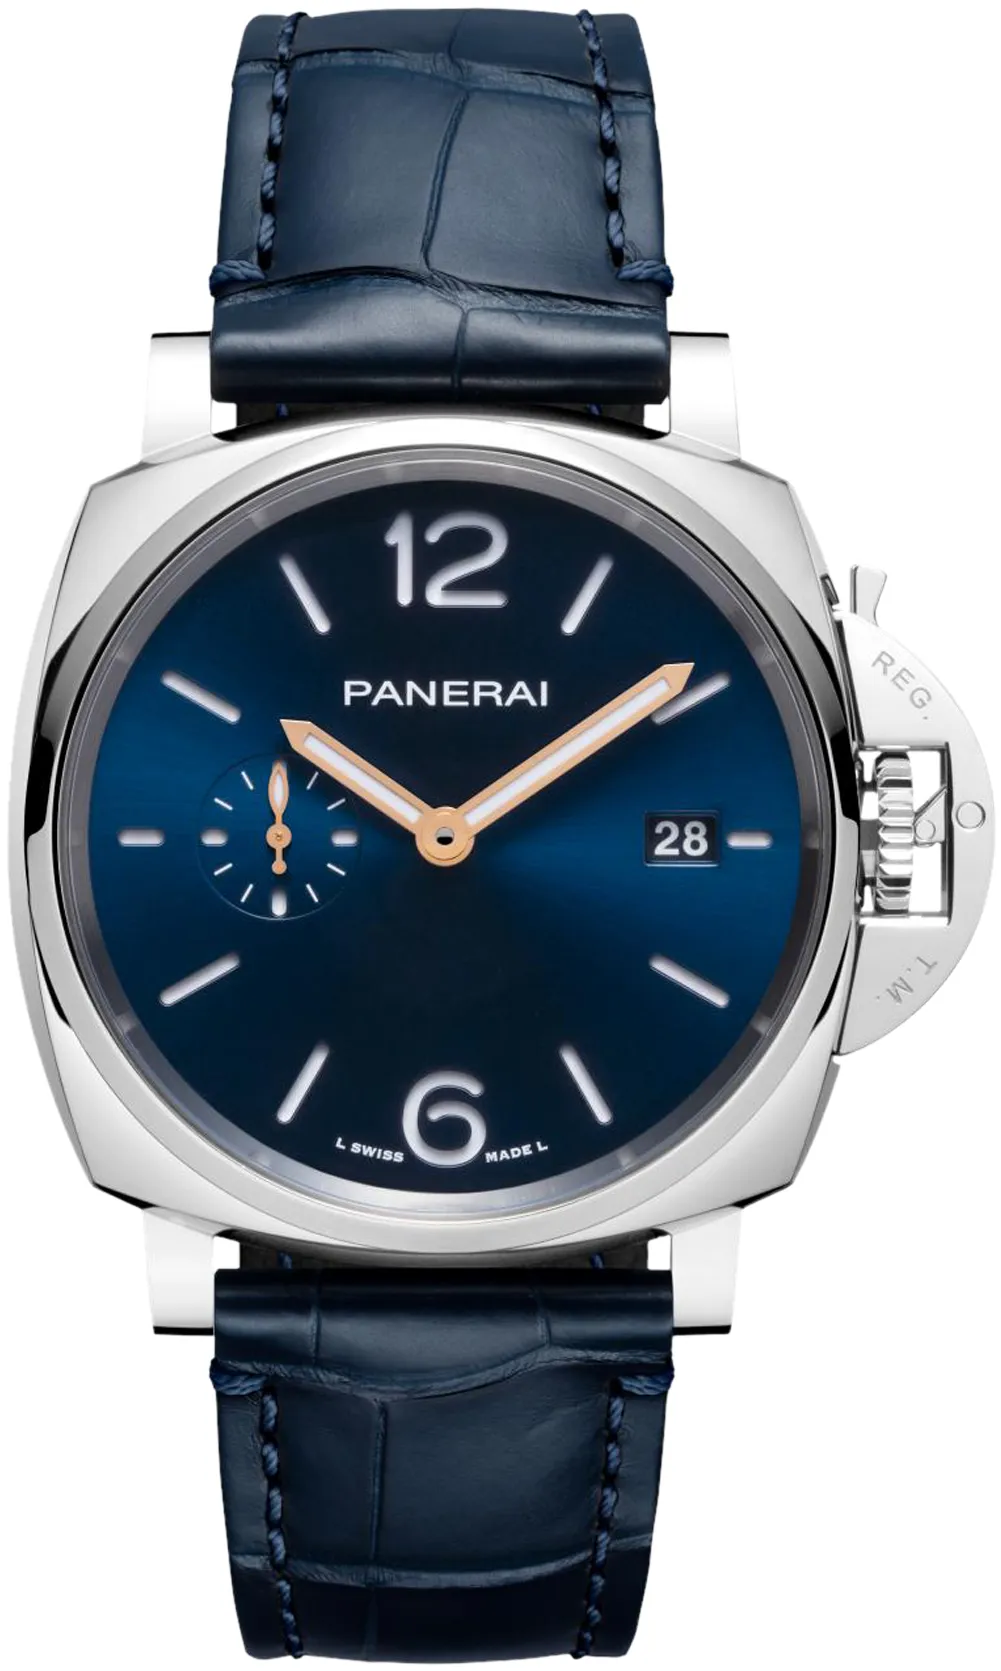 Panerai Luminor Due PAM 01273 42mm Stainless steel Blue